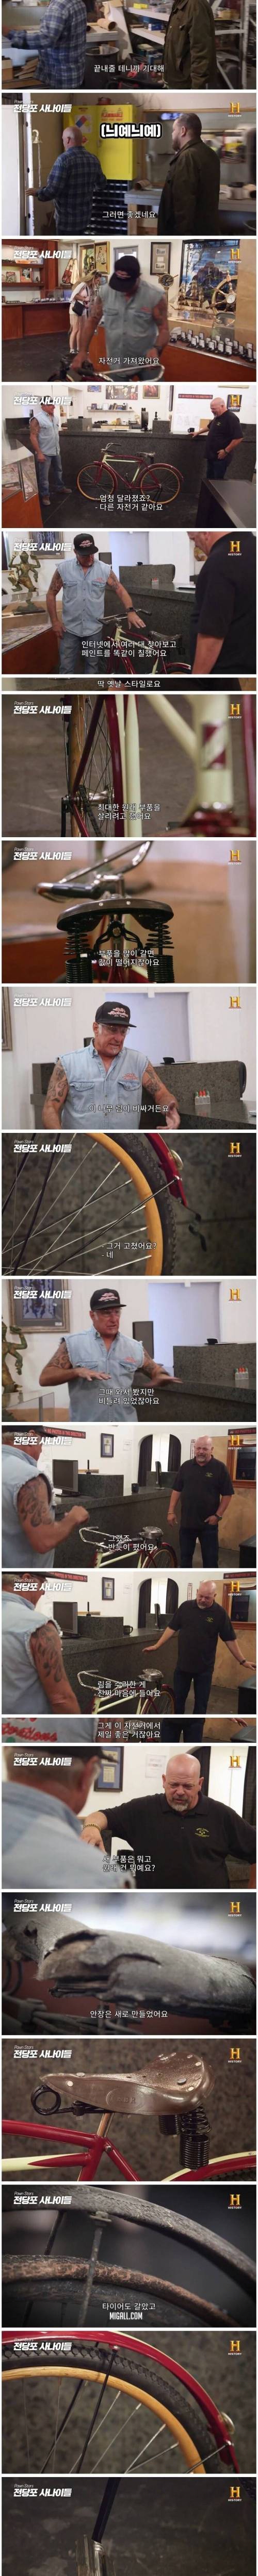 [스압] 120살 먹은 고철 자전거의 놀라운 변신